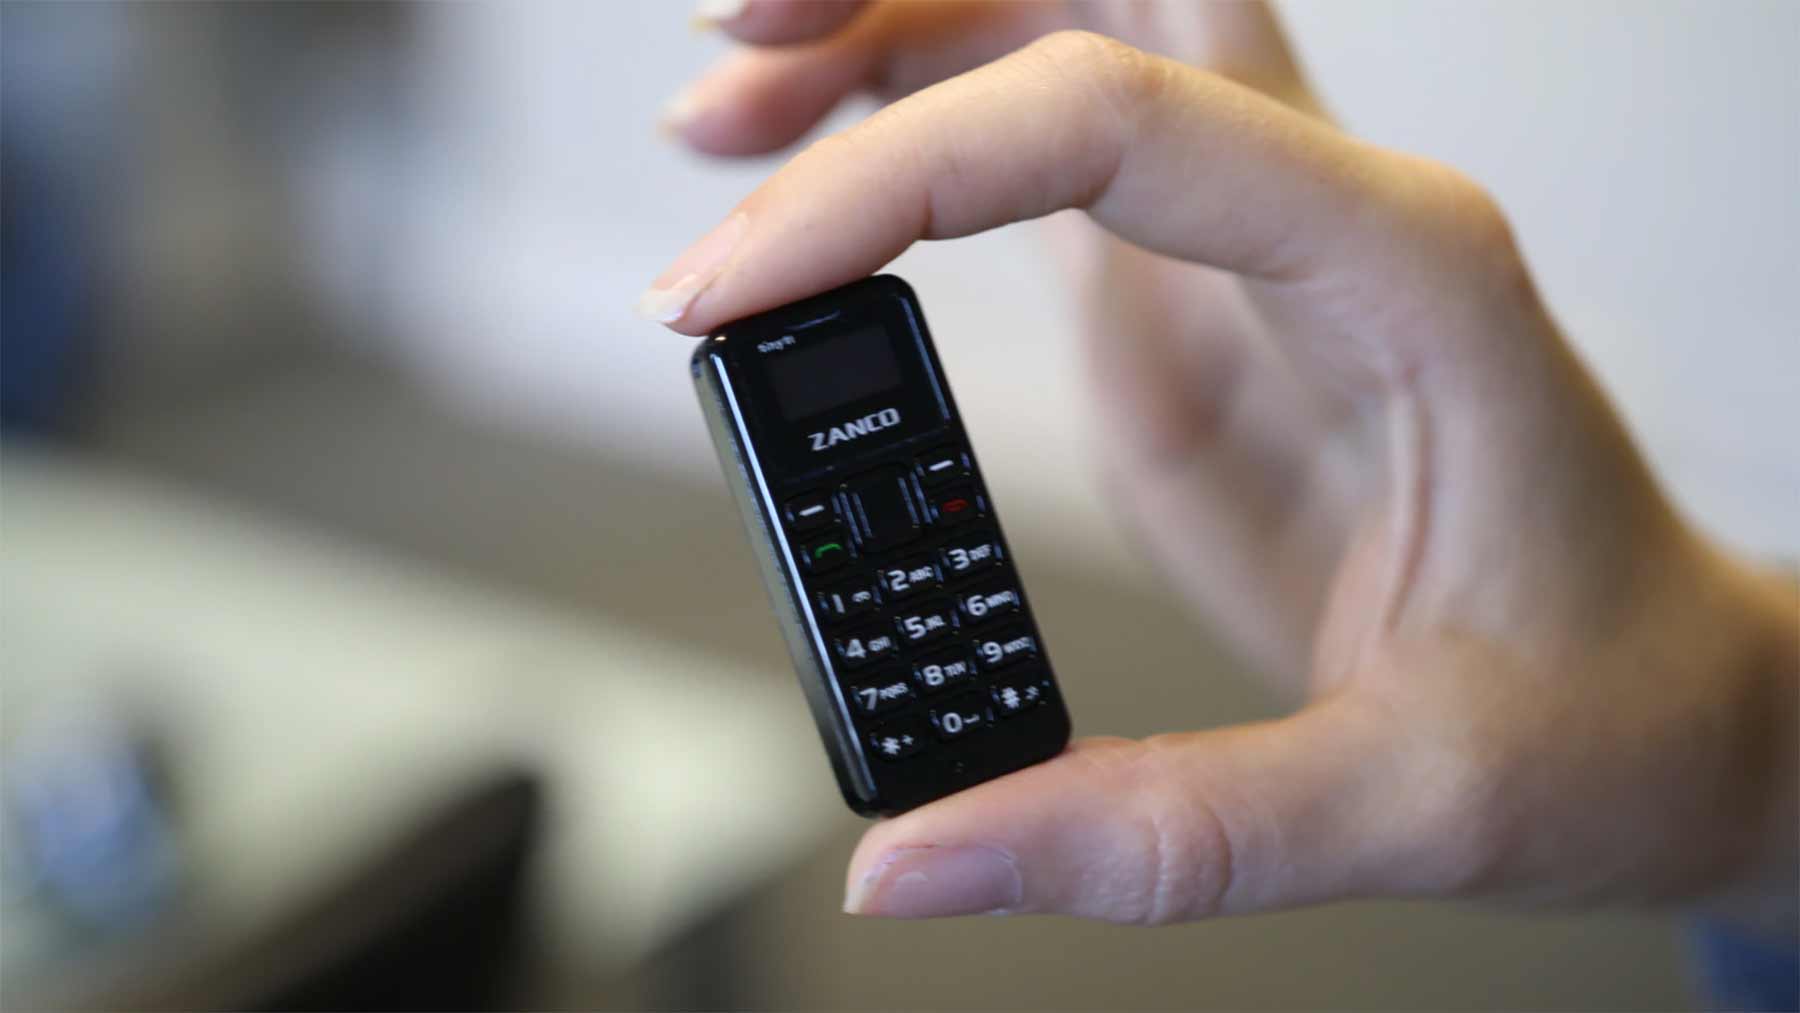 Das kleinste Handy der Welt zanko-tiny-t1 